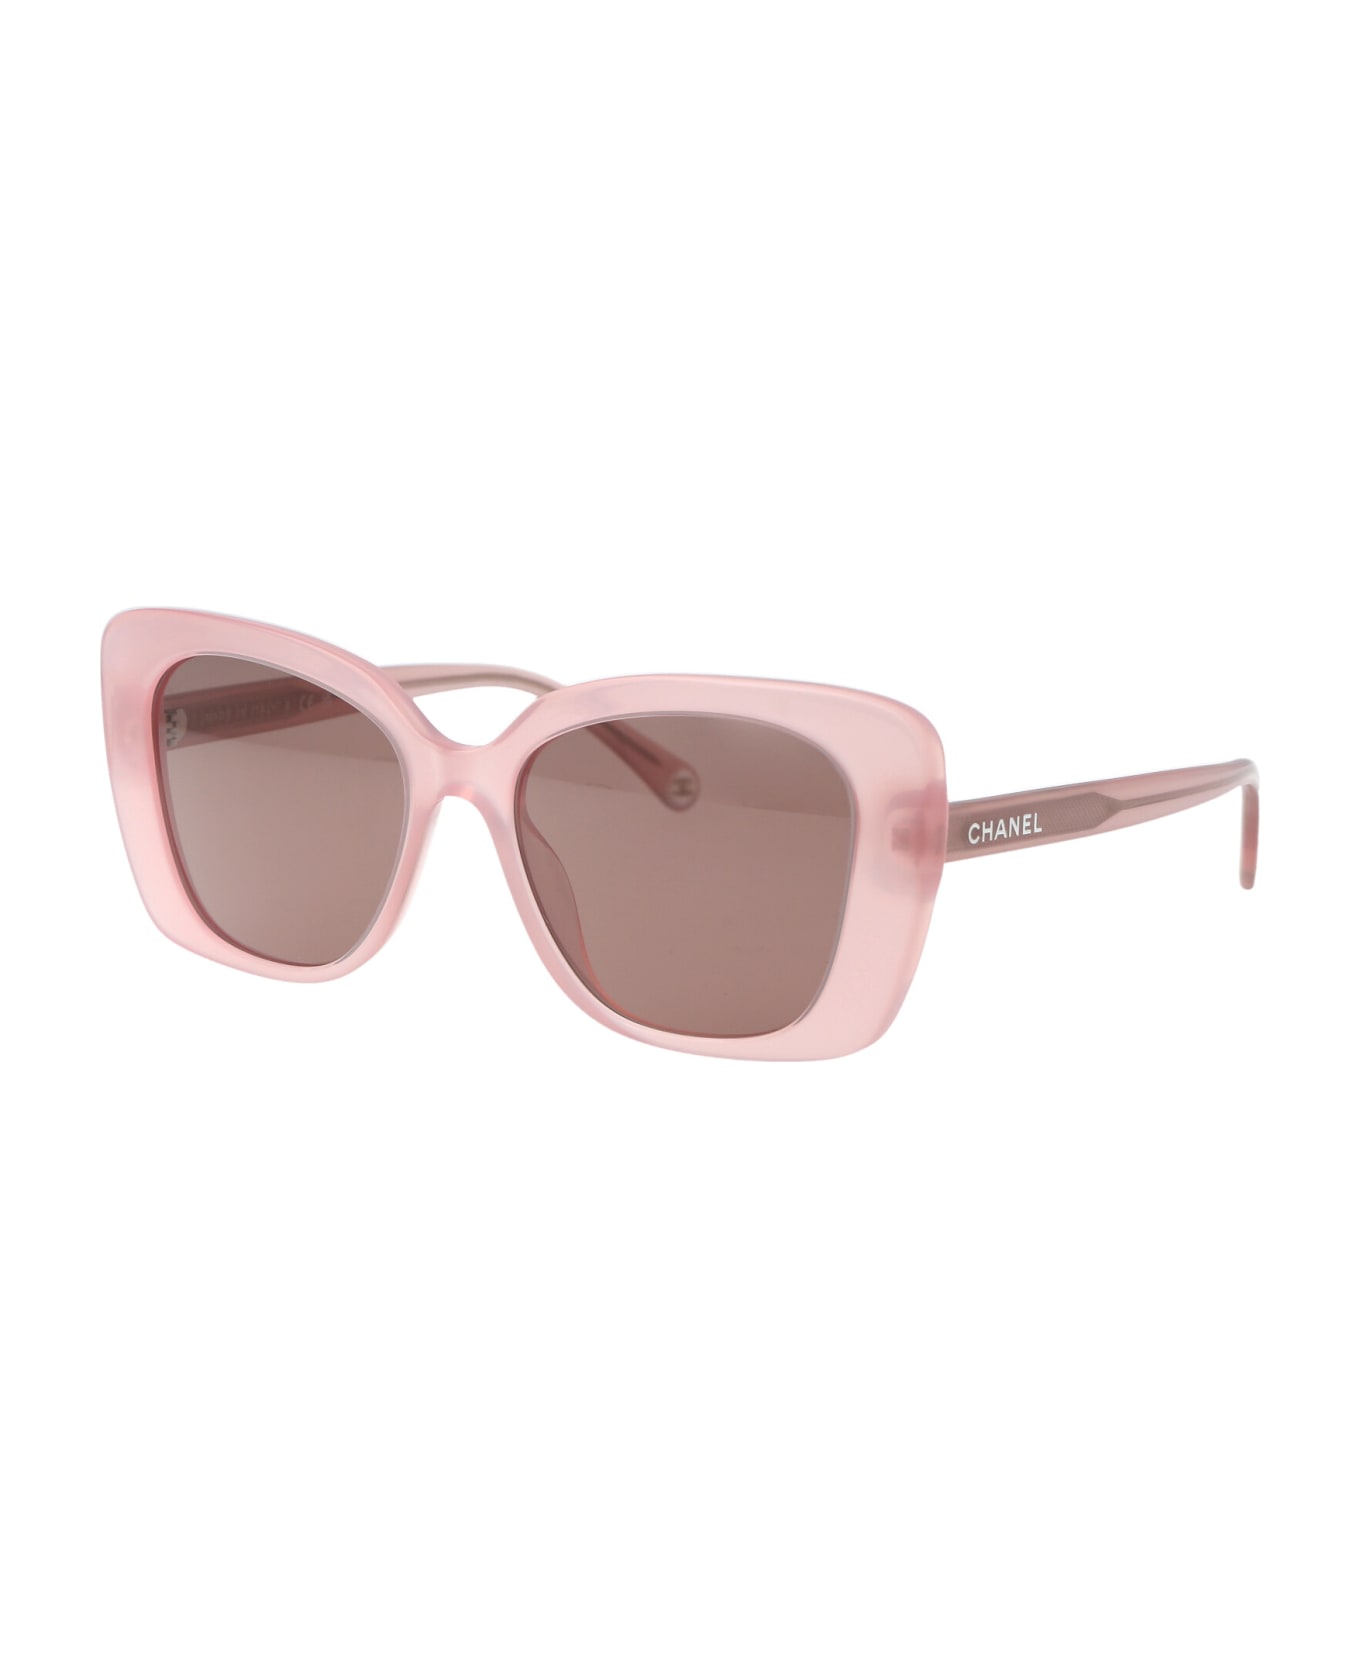 Chanel 0ch5504 Sunglasses - 17334R PINK サングラス